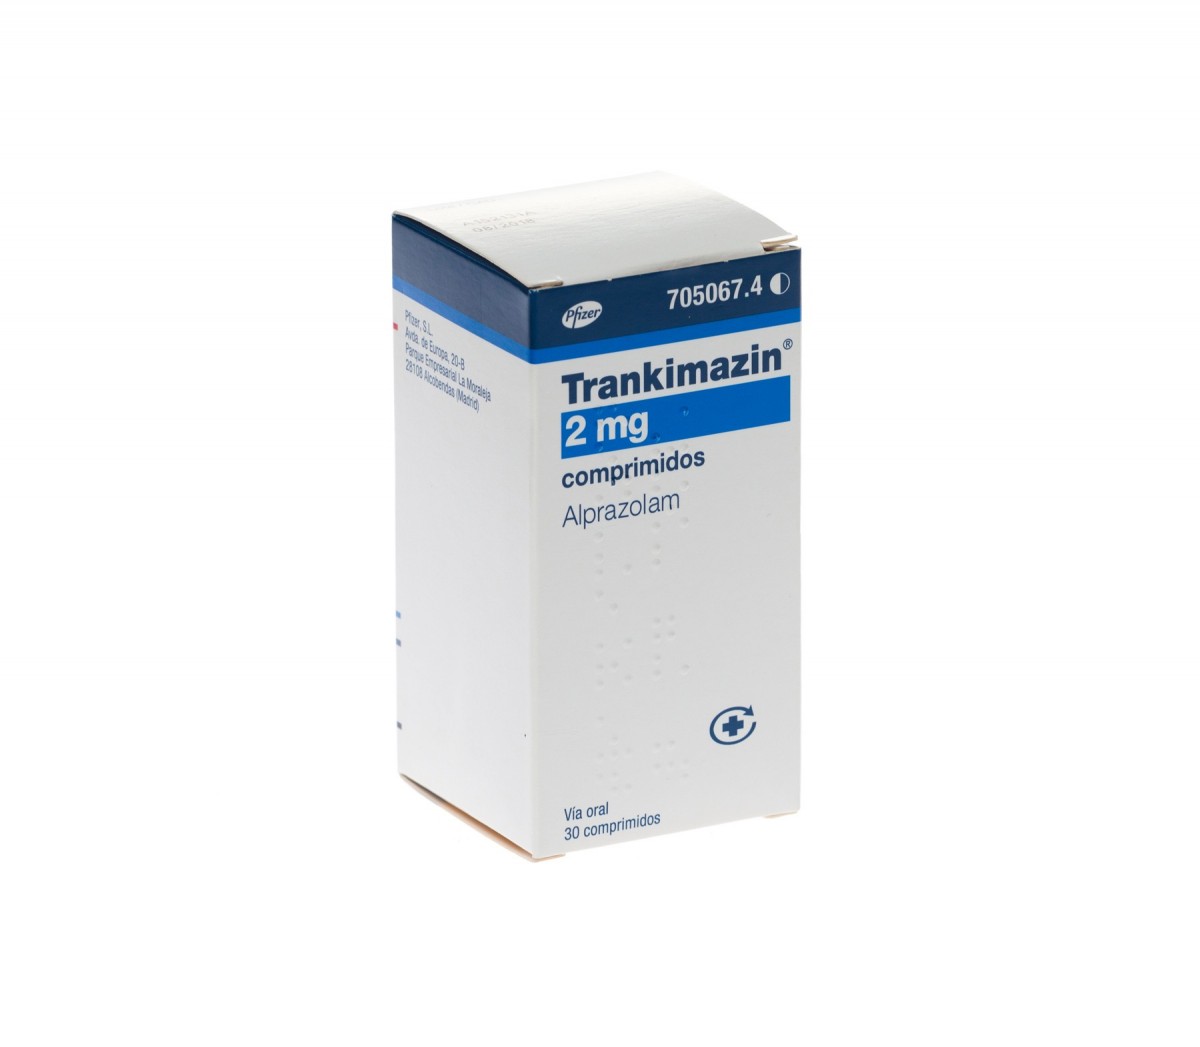 TRANKIMAZIN 2 mg COMPRIMIDOS, 50 comprimidos fotografía del envase.